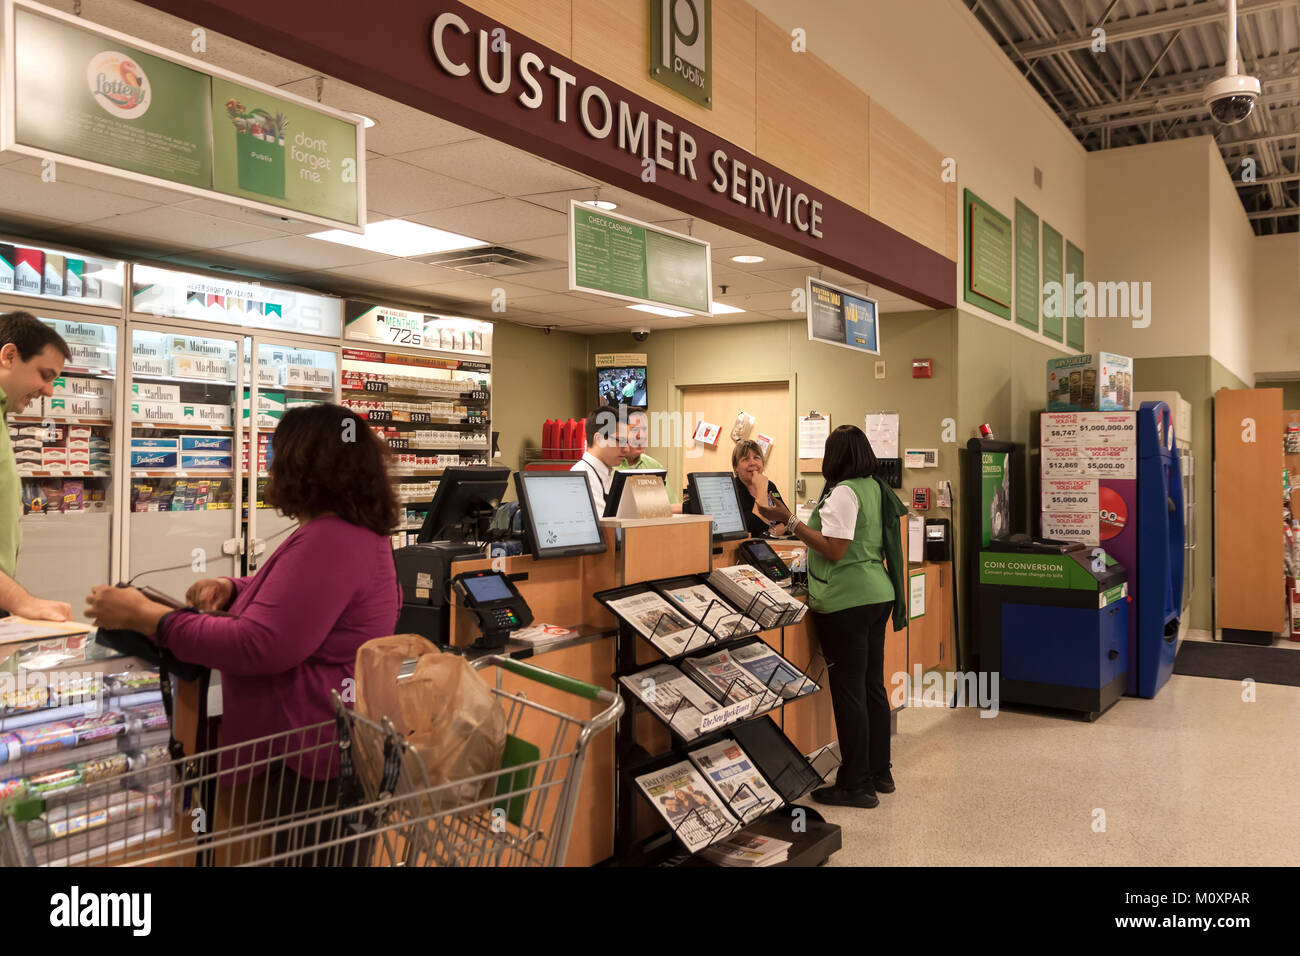 Customer Service Desk qui gère les retours et les plaintes dans un supermarché Publix en Floride, États-Unis d'Amérique. Banque D'Images